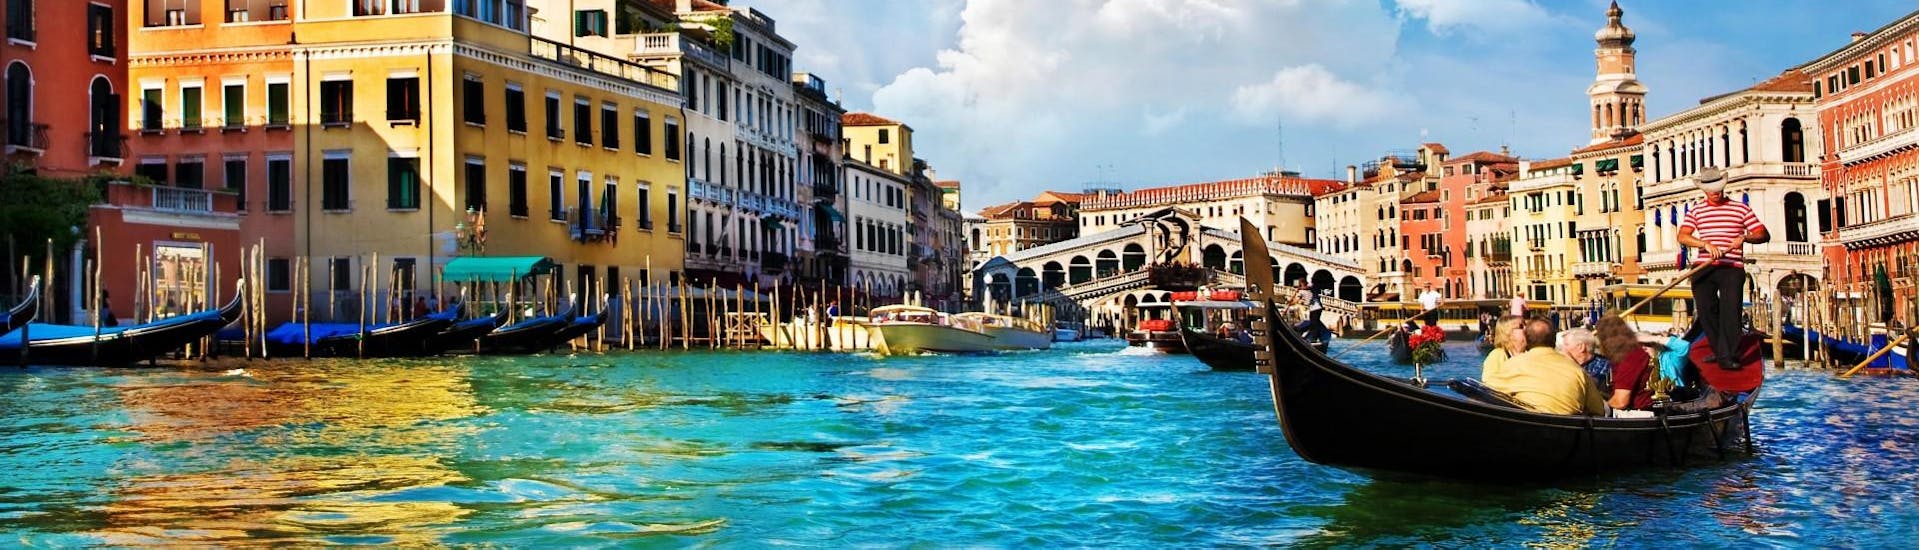 Sortie en bateau sur le Grand Canal de Venise.